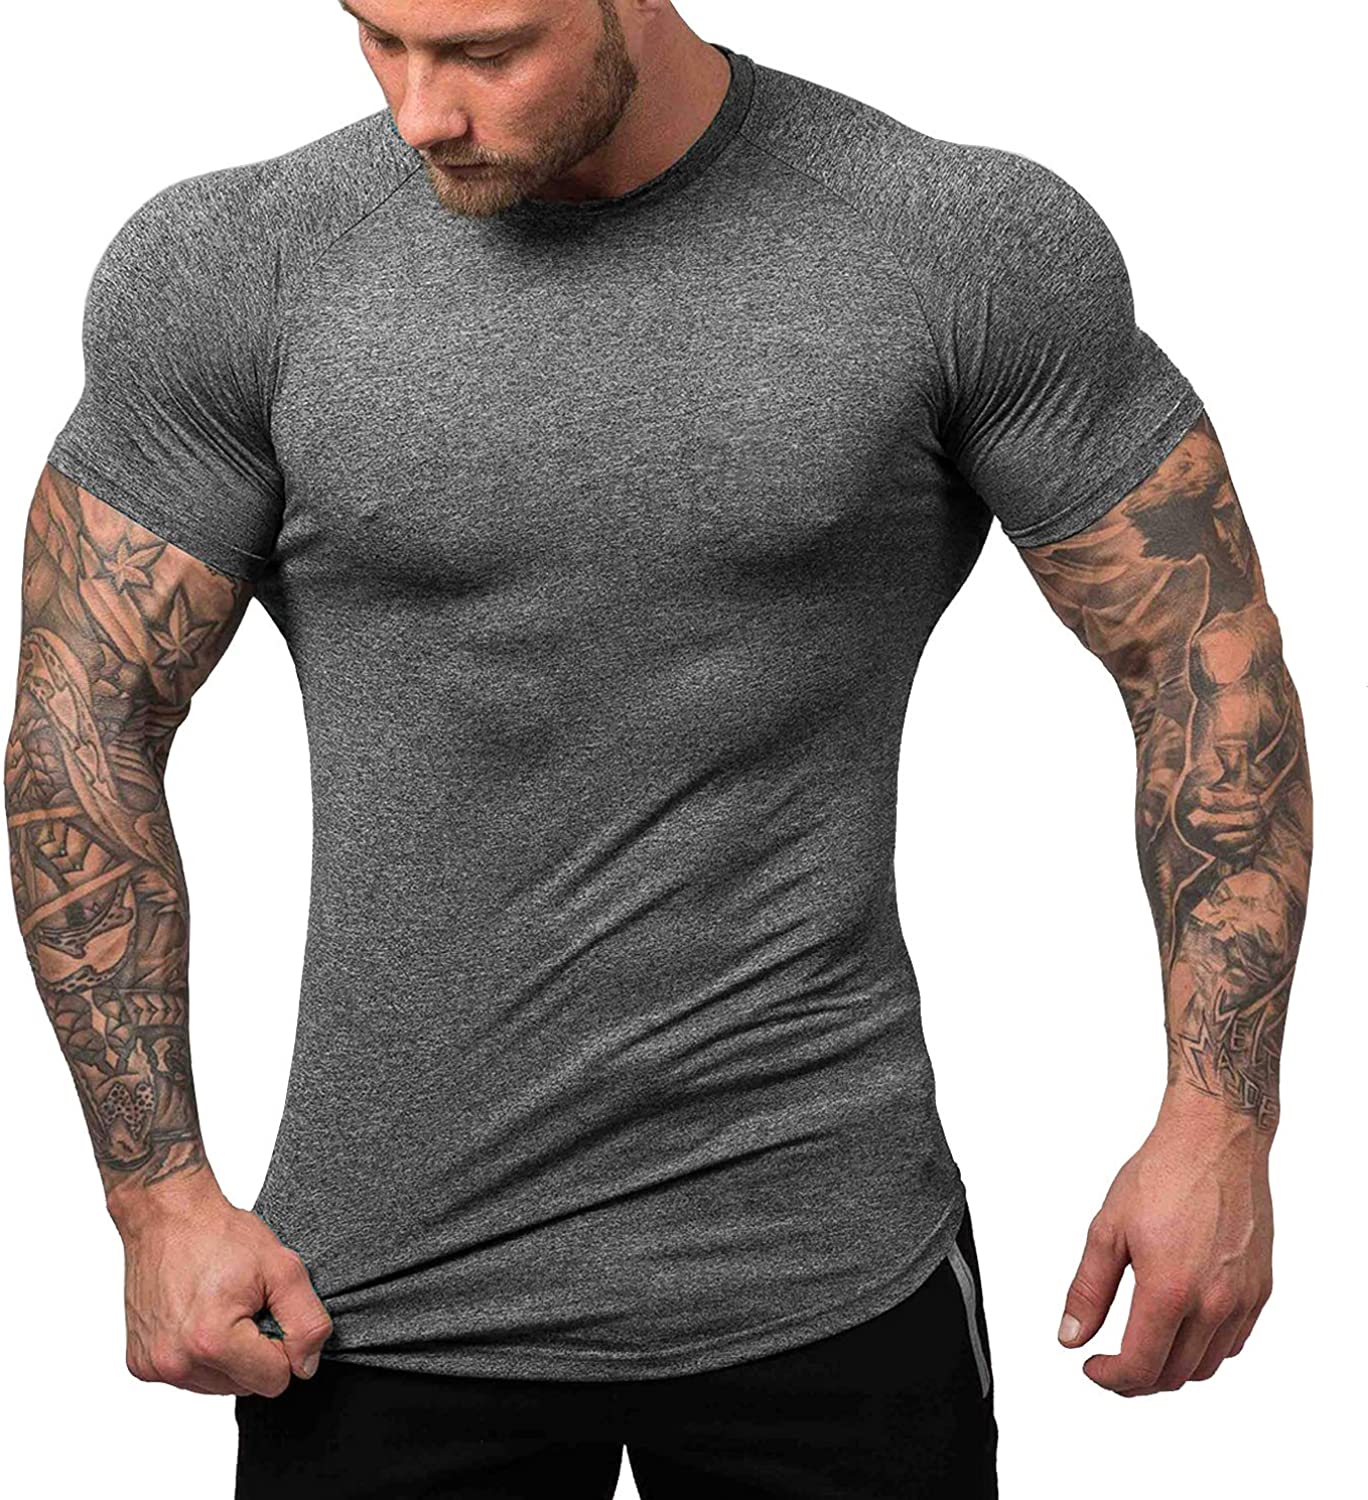 Details about   URRU Mens Quick Dry Fit Gym T-Shirts Contrast Color Workout Bodybuilding Trainin 